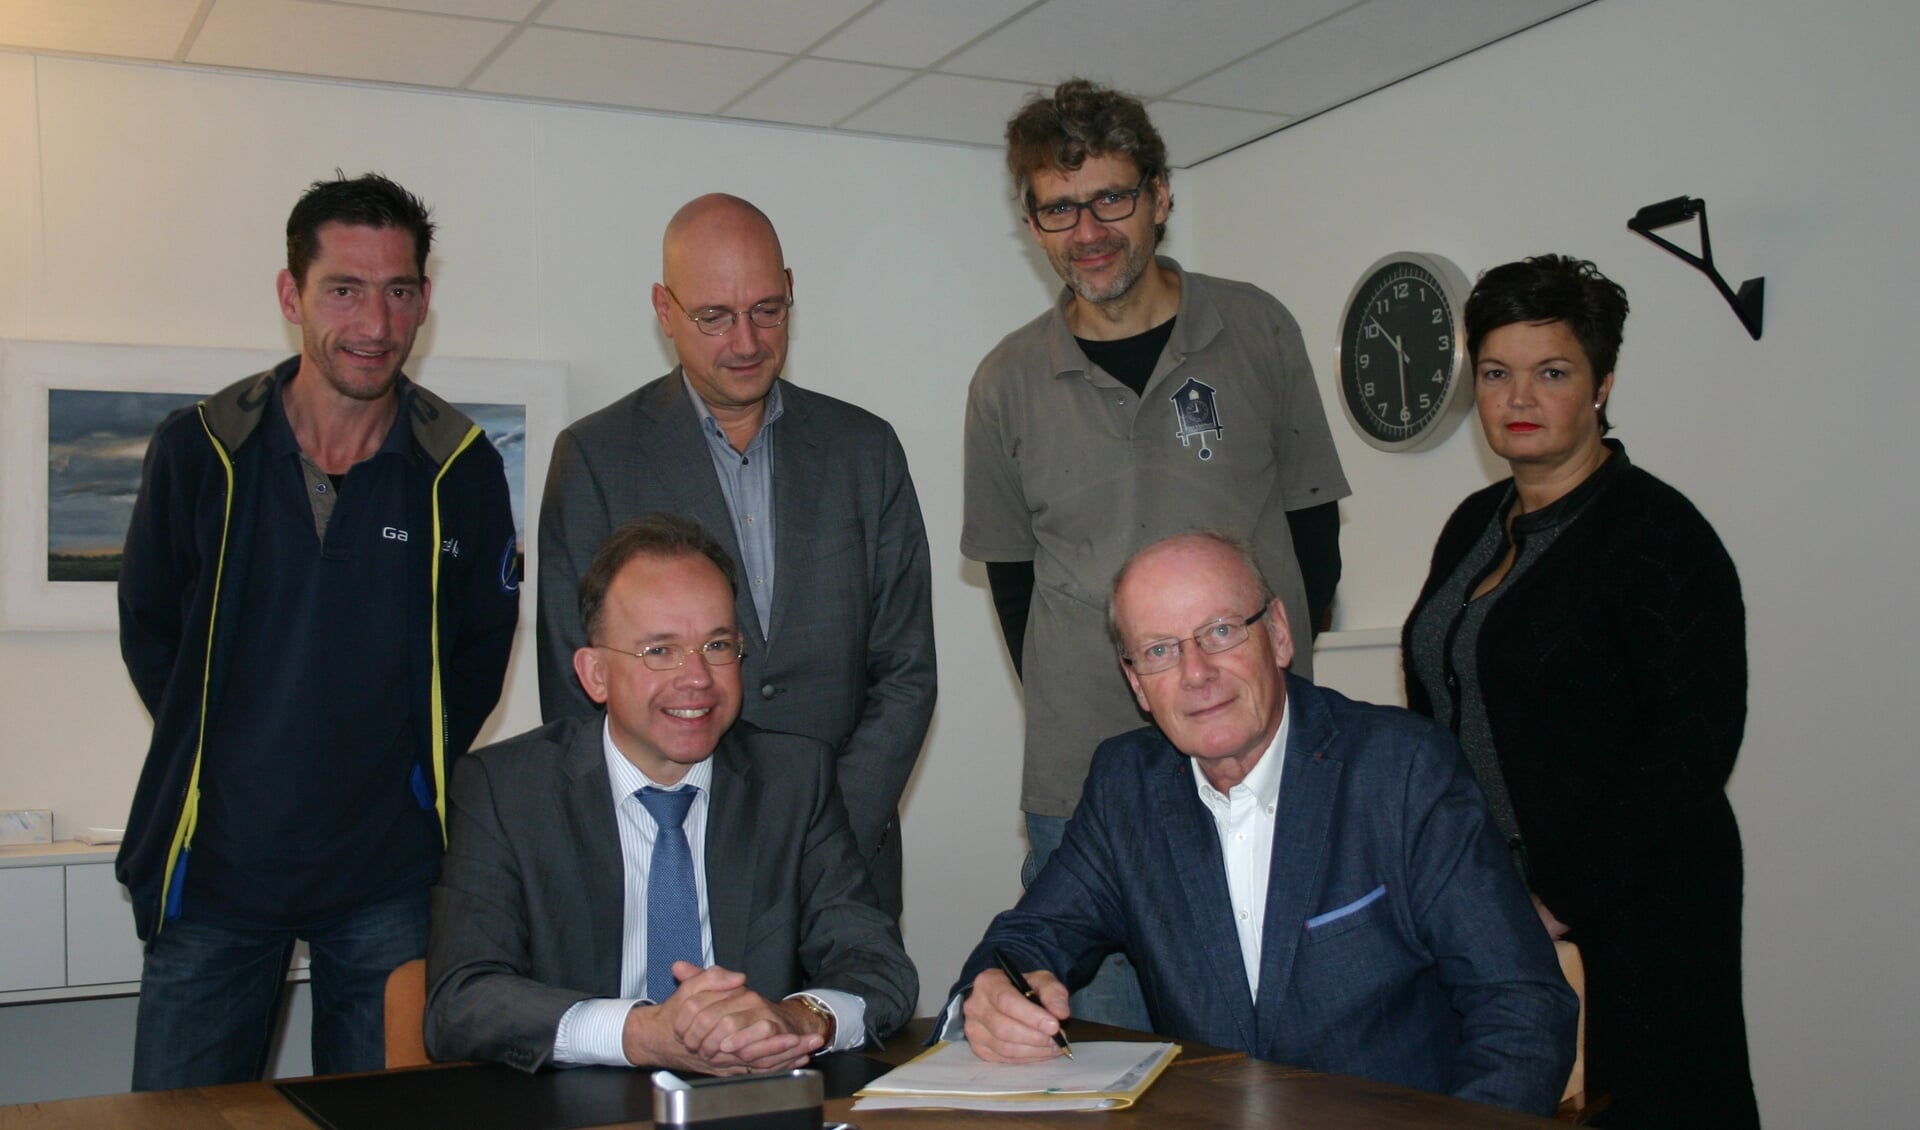 Voorzitter dhr. Henk Hollak tekent acte onder het toeziend oog van notaris Blankenstijn en mede-bestuursleden, de heren Homminga (penningmeester), Haverkamp (secretaris), Jansen (lid) en mevr. Jaaltink (lid). Foto: Jan Knoef